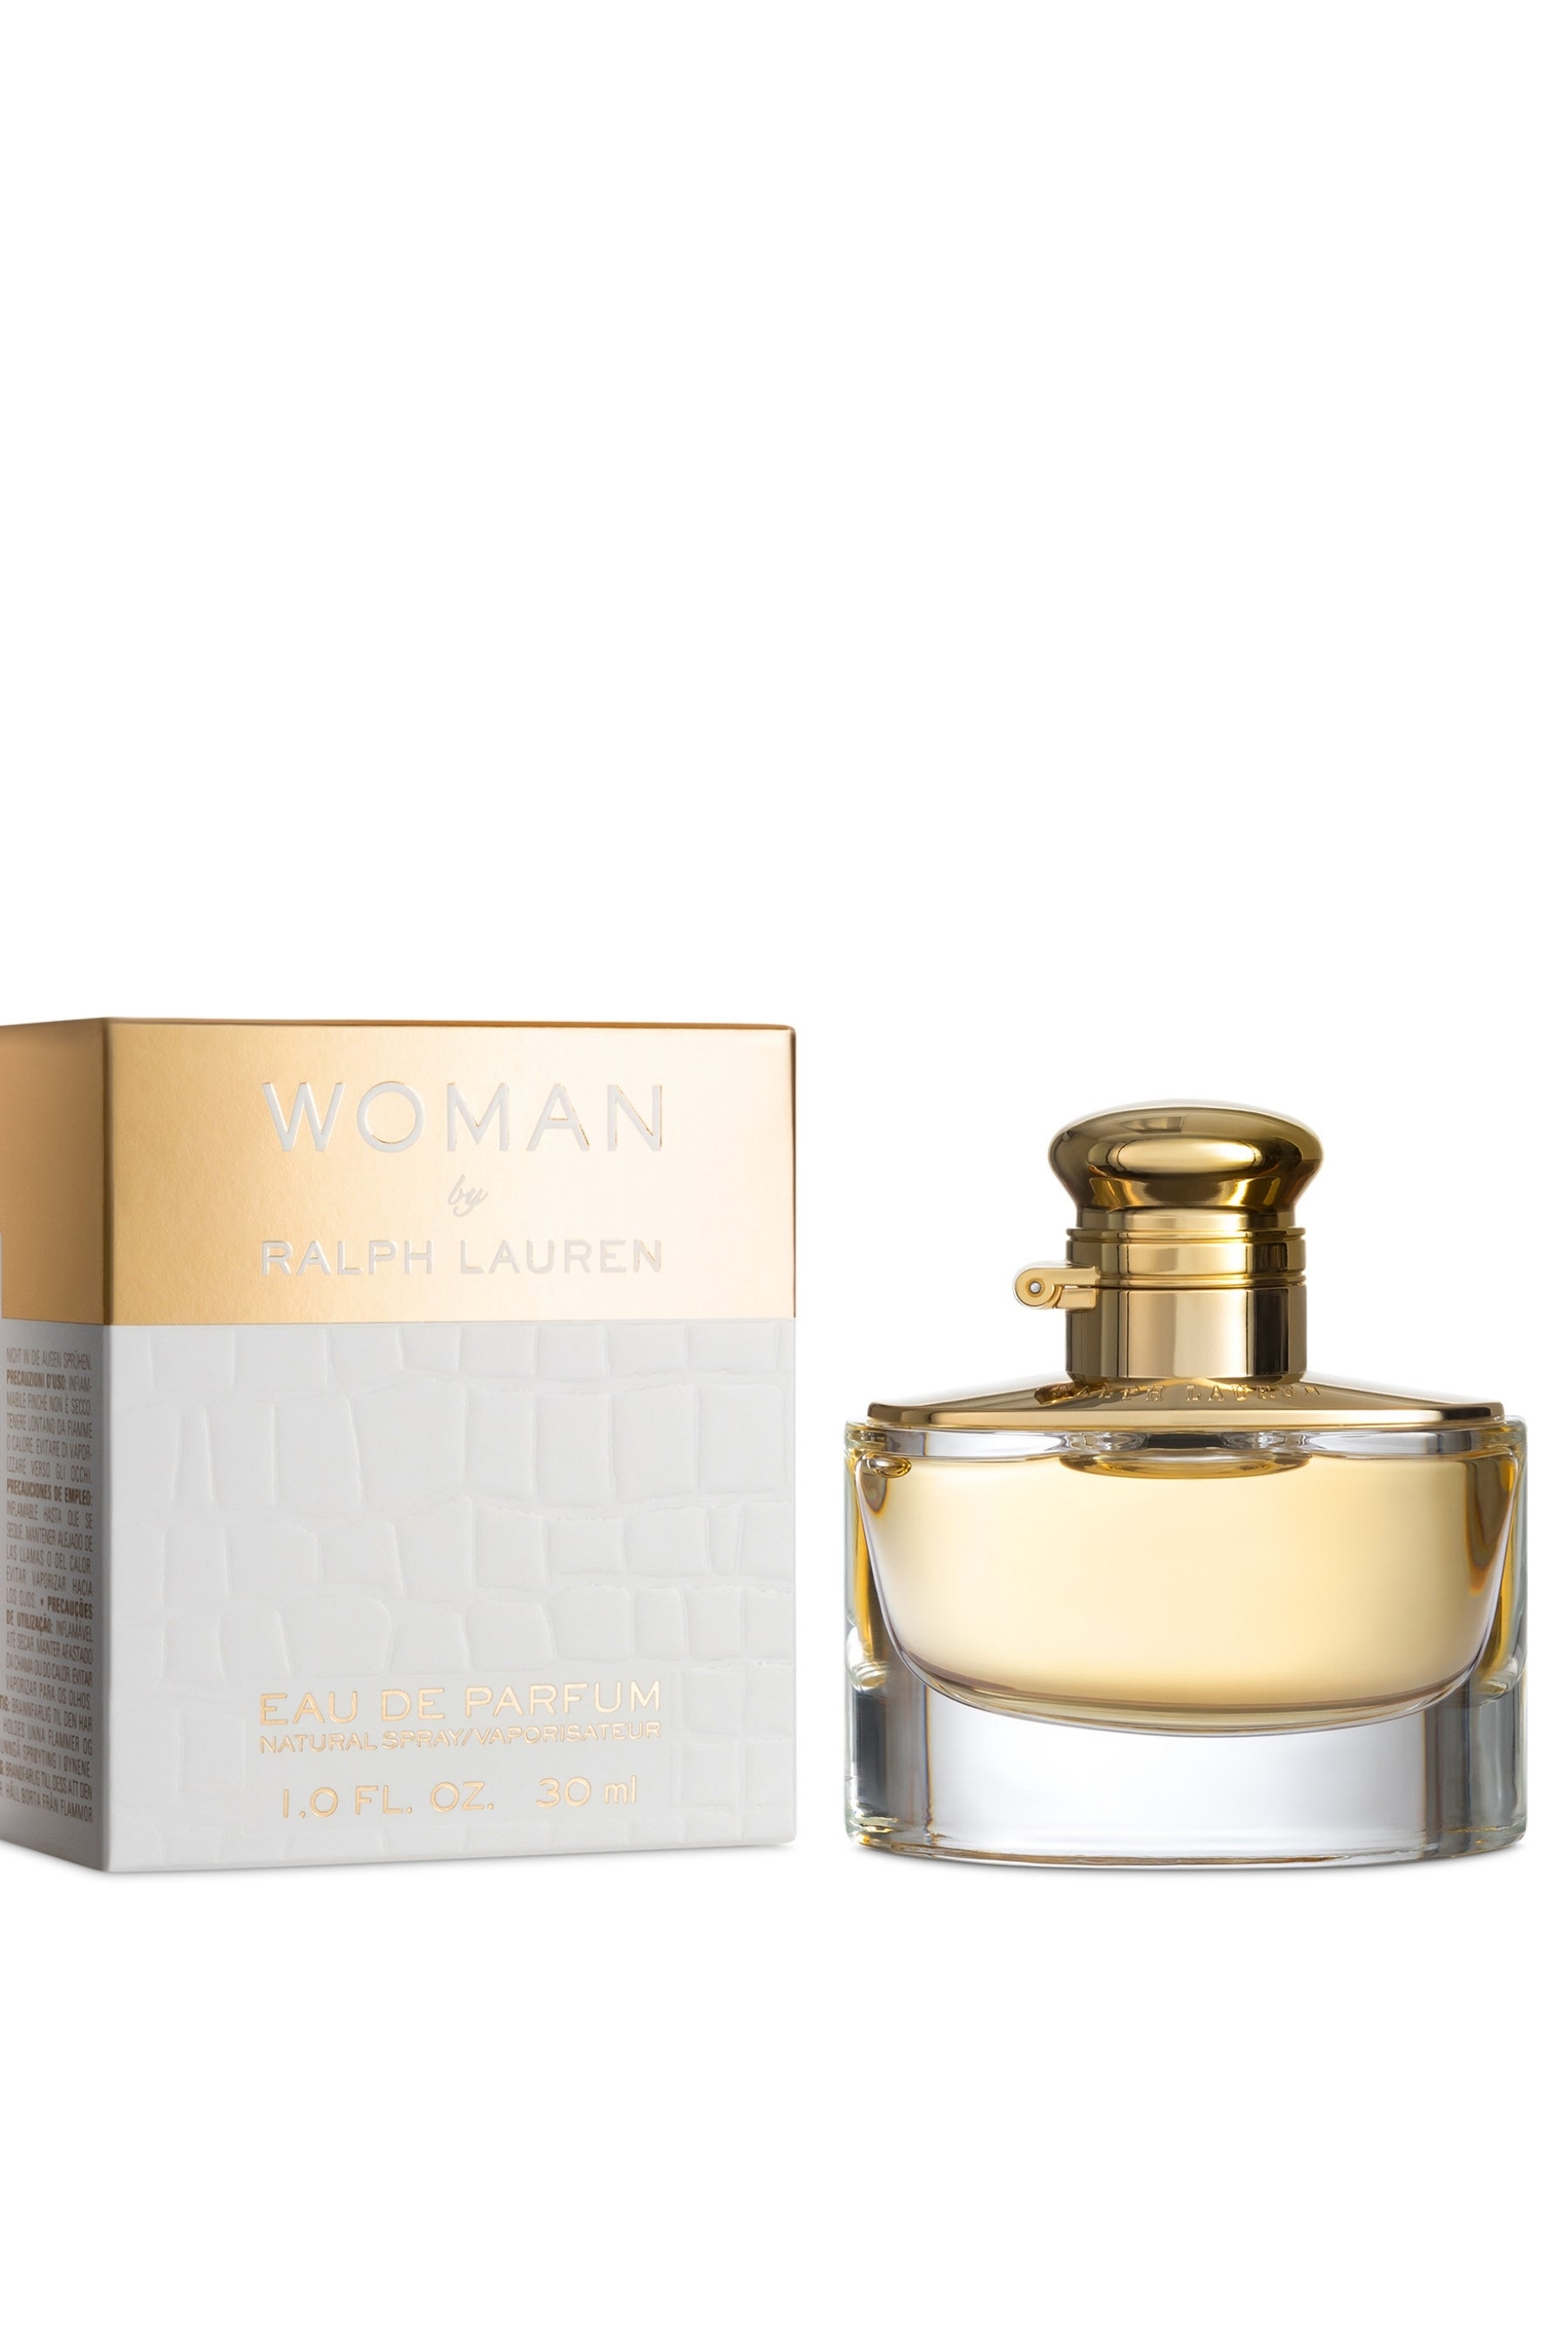 Ralph Lauren | Woman de Eau REBL Parfum 